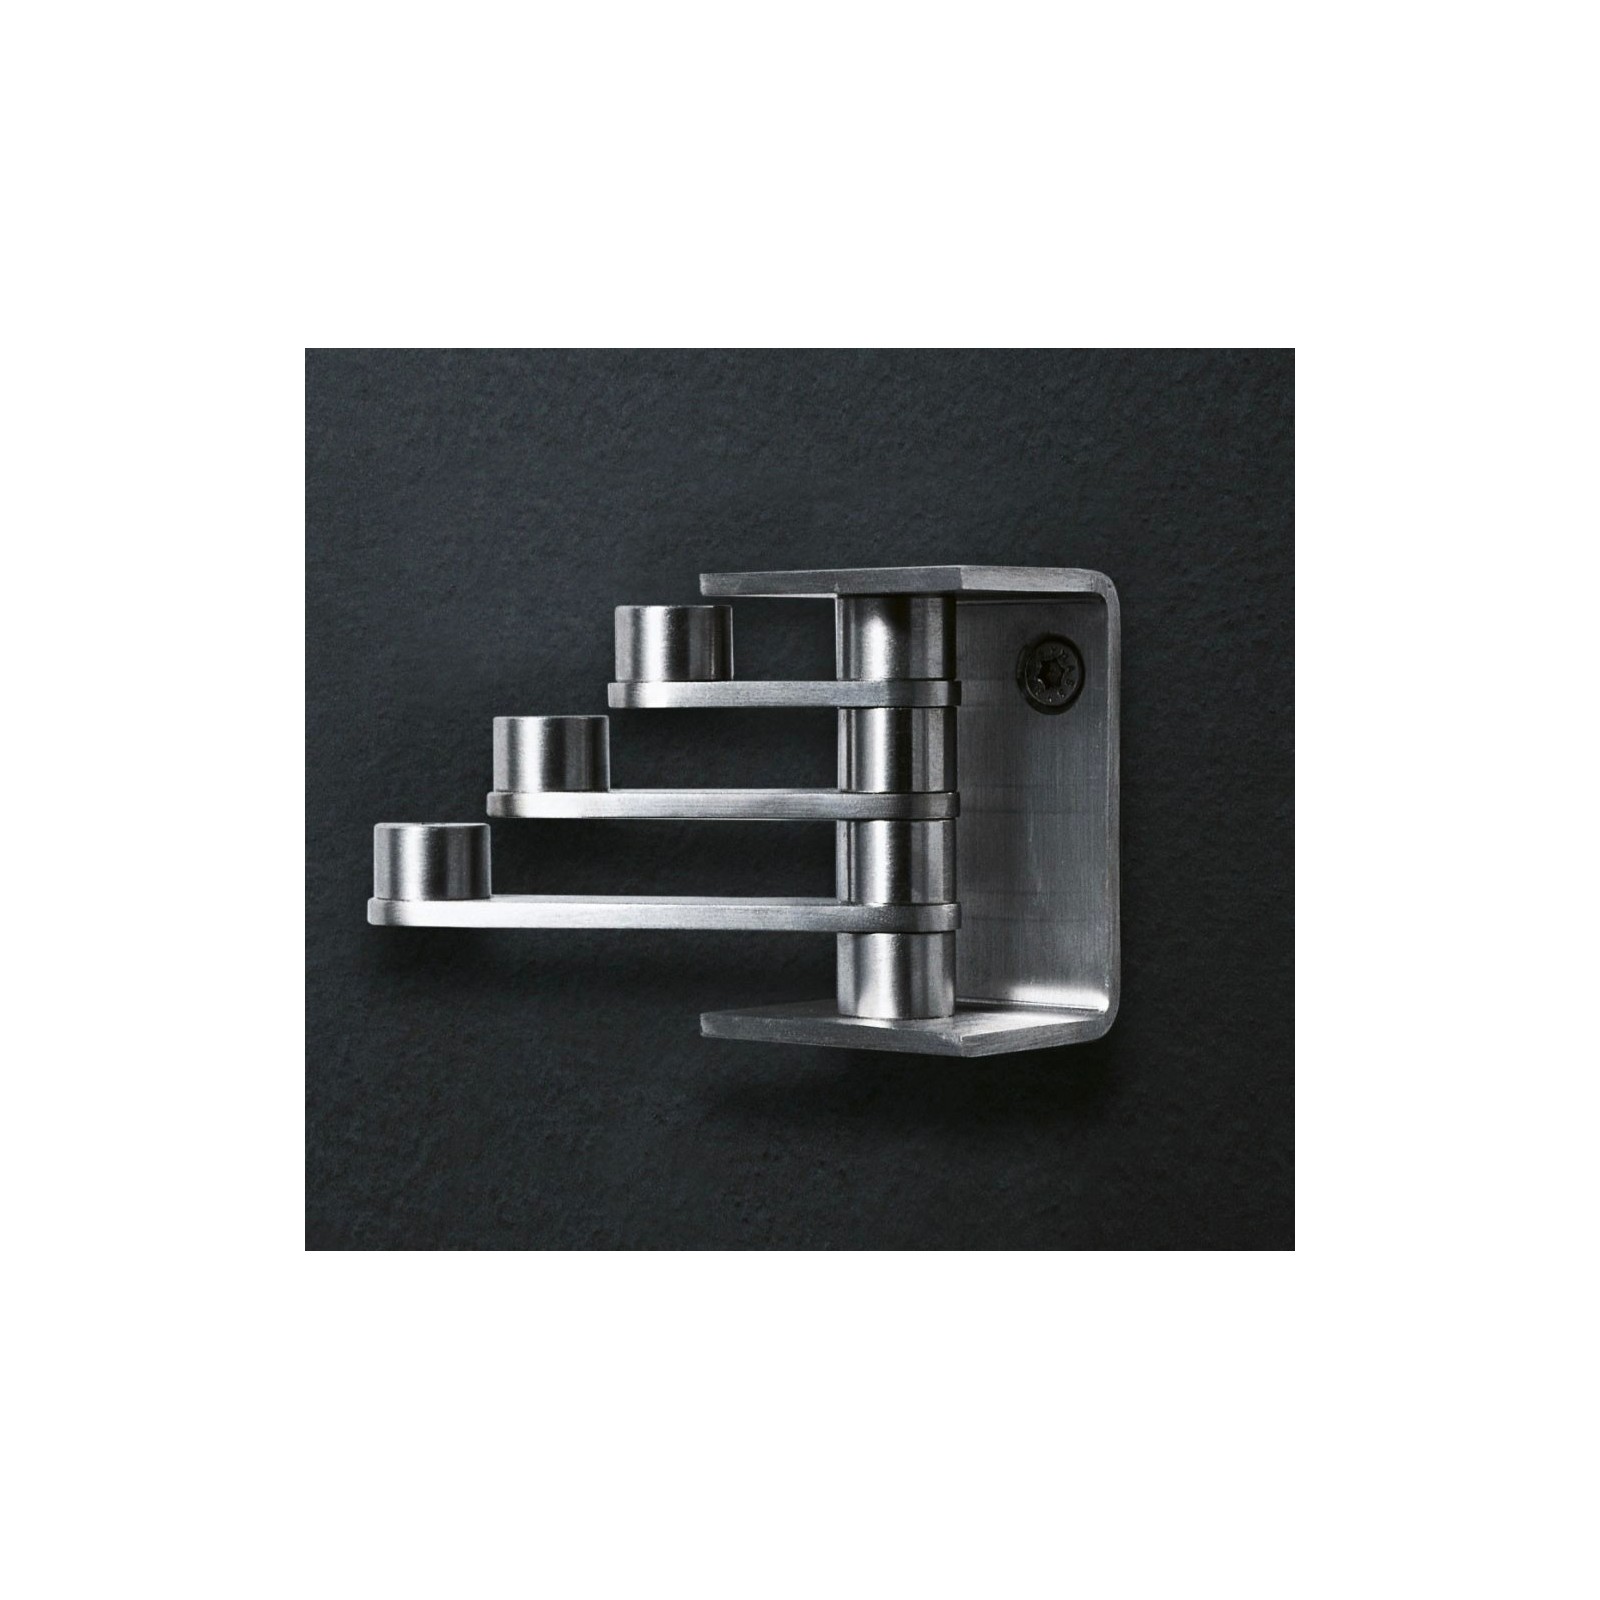 Minimal accessori in acciaio inox by Boffi - contecom